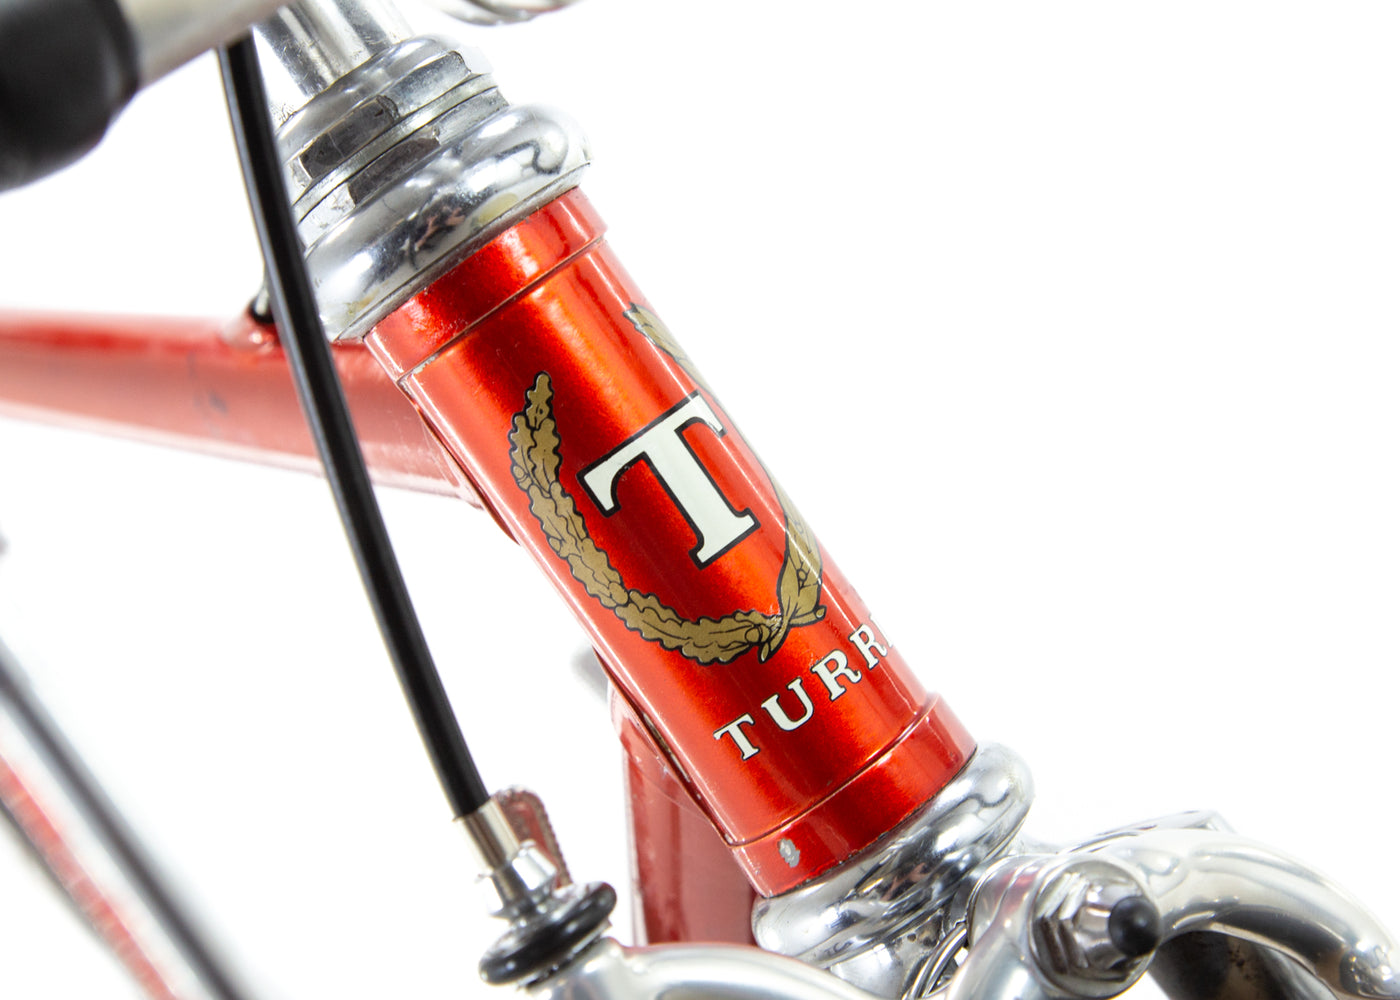 Turri 超级记录公路自行车 1980 年代